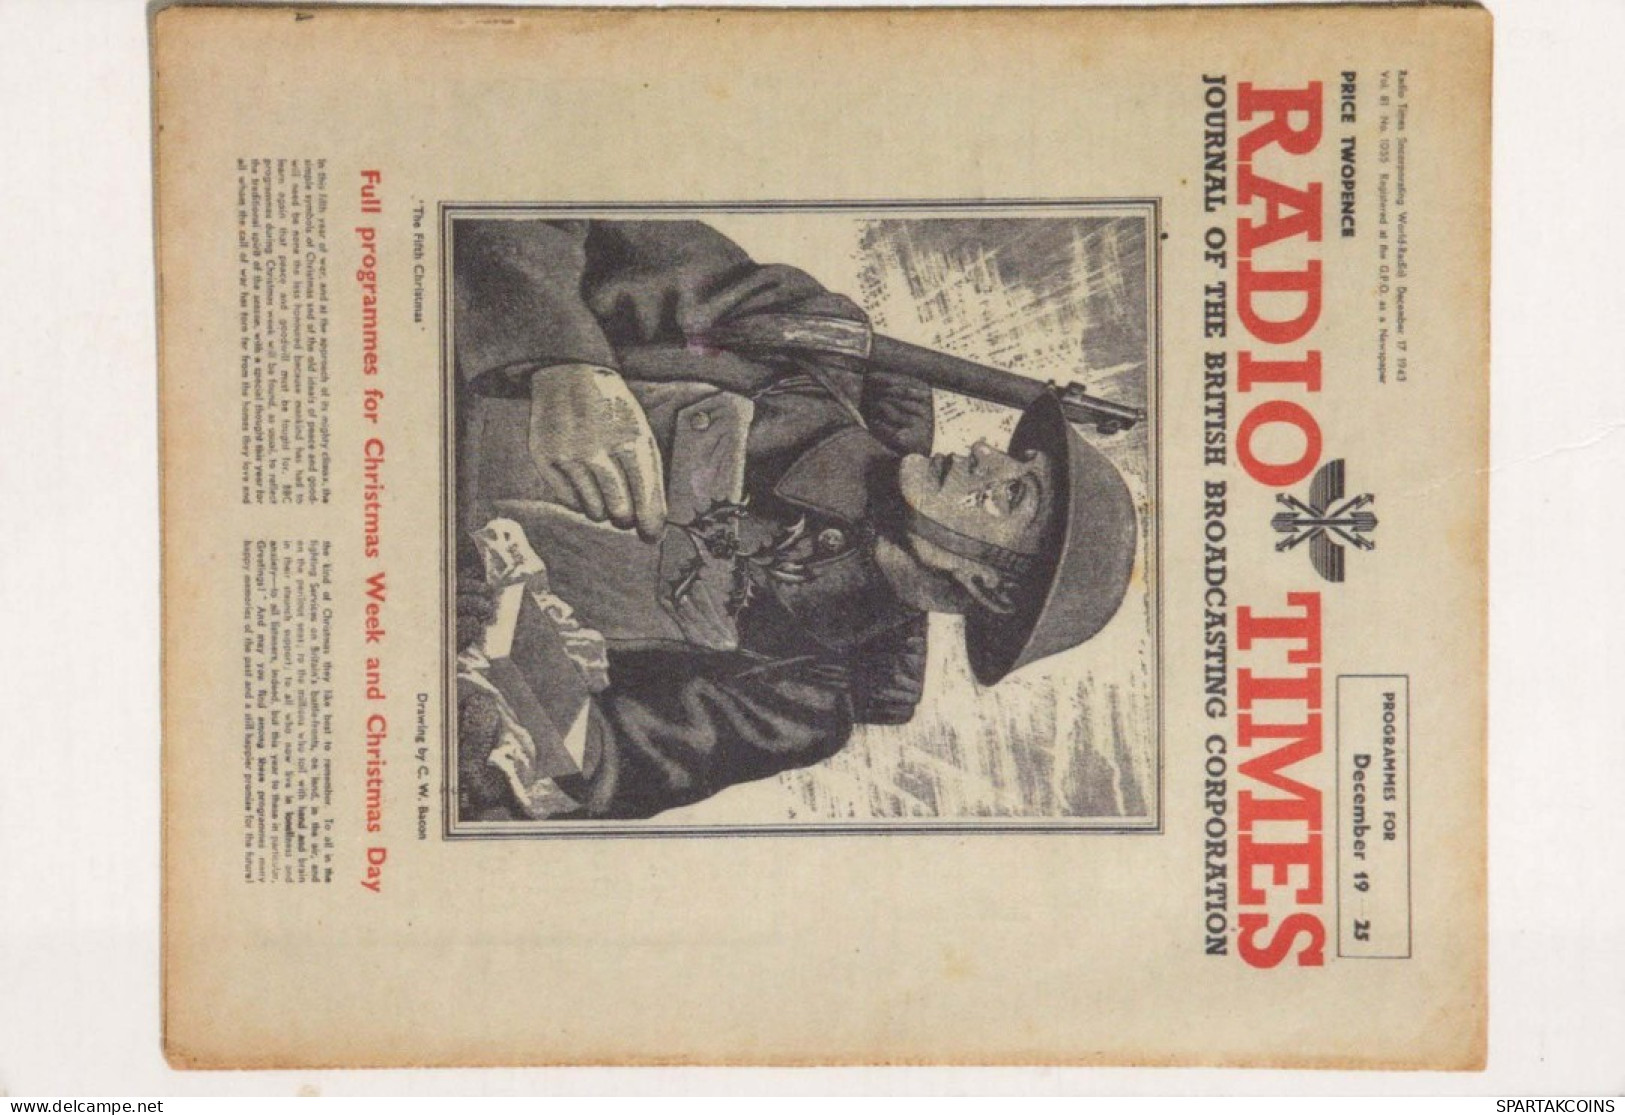 SOLDADOS PATRIÓTICO Militaria Vintage Tarjeta Postal CPSM #PBV939.A - Patriotic